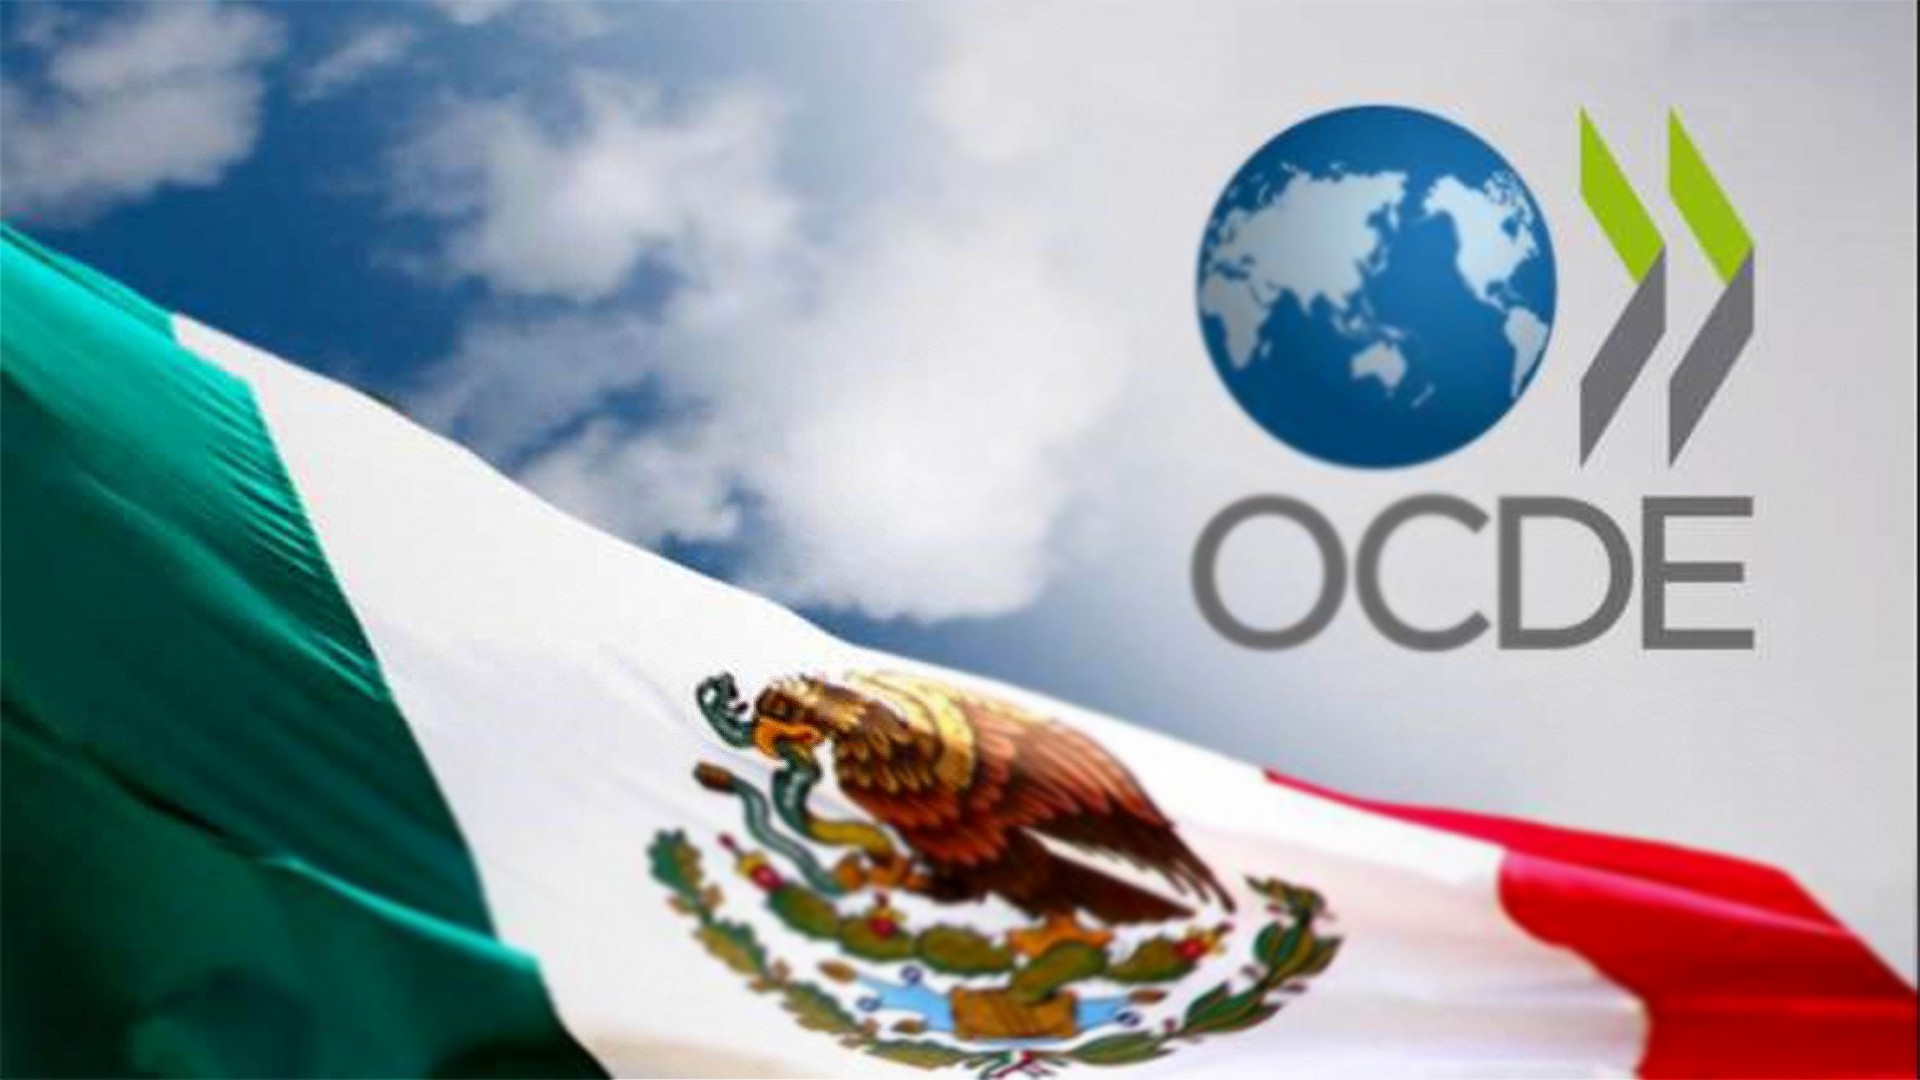 México destaca entre los países de la OCDE por avance del PIB